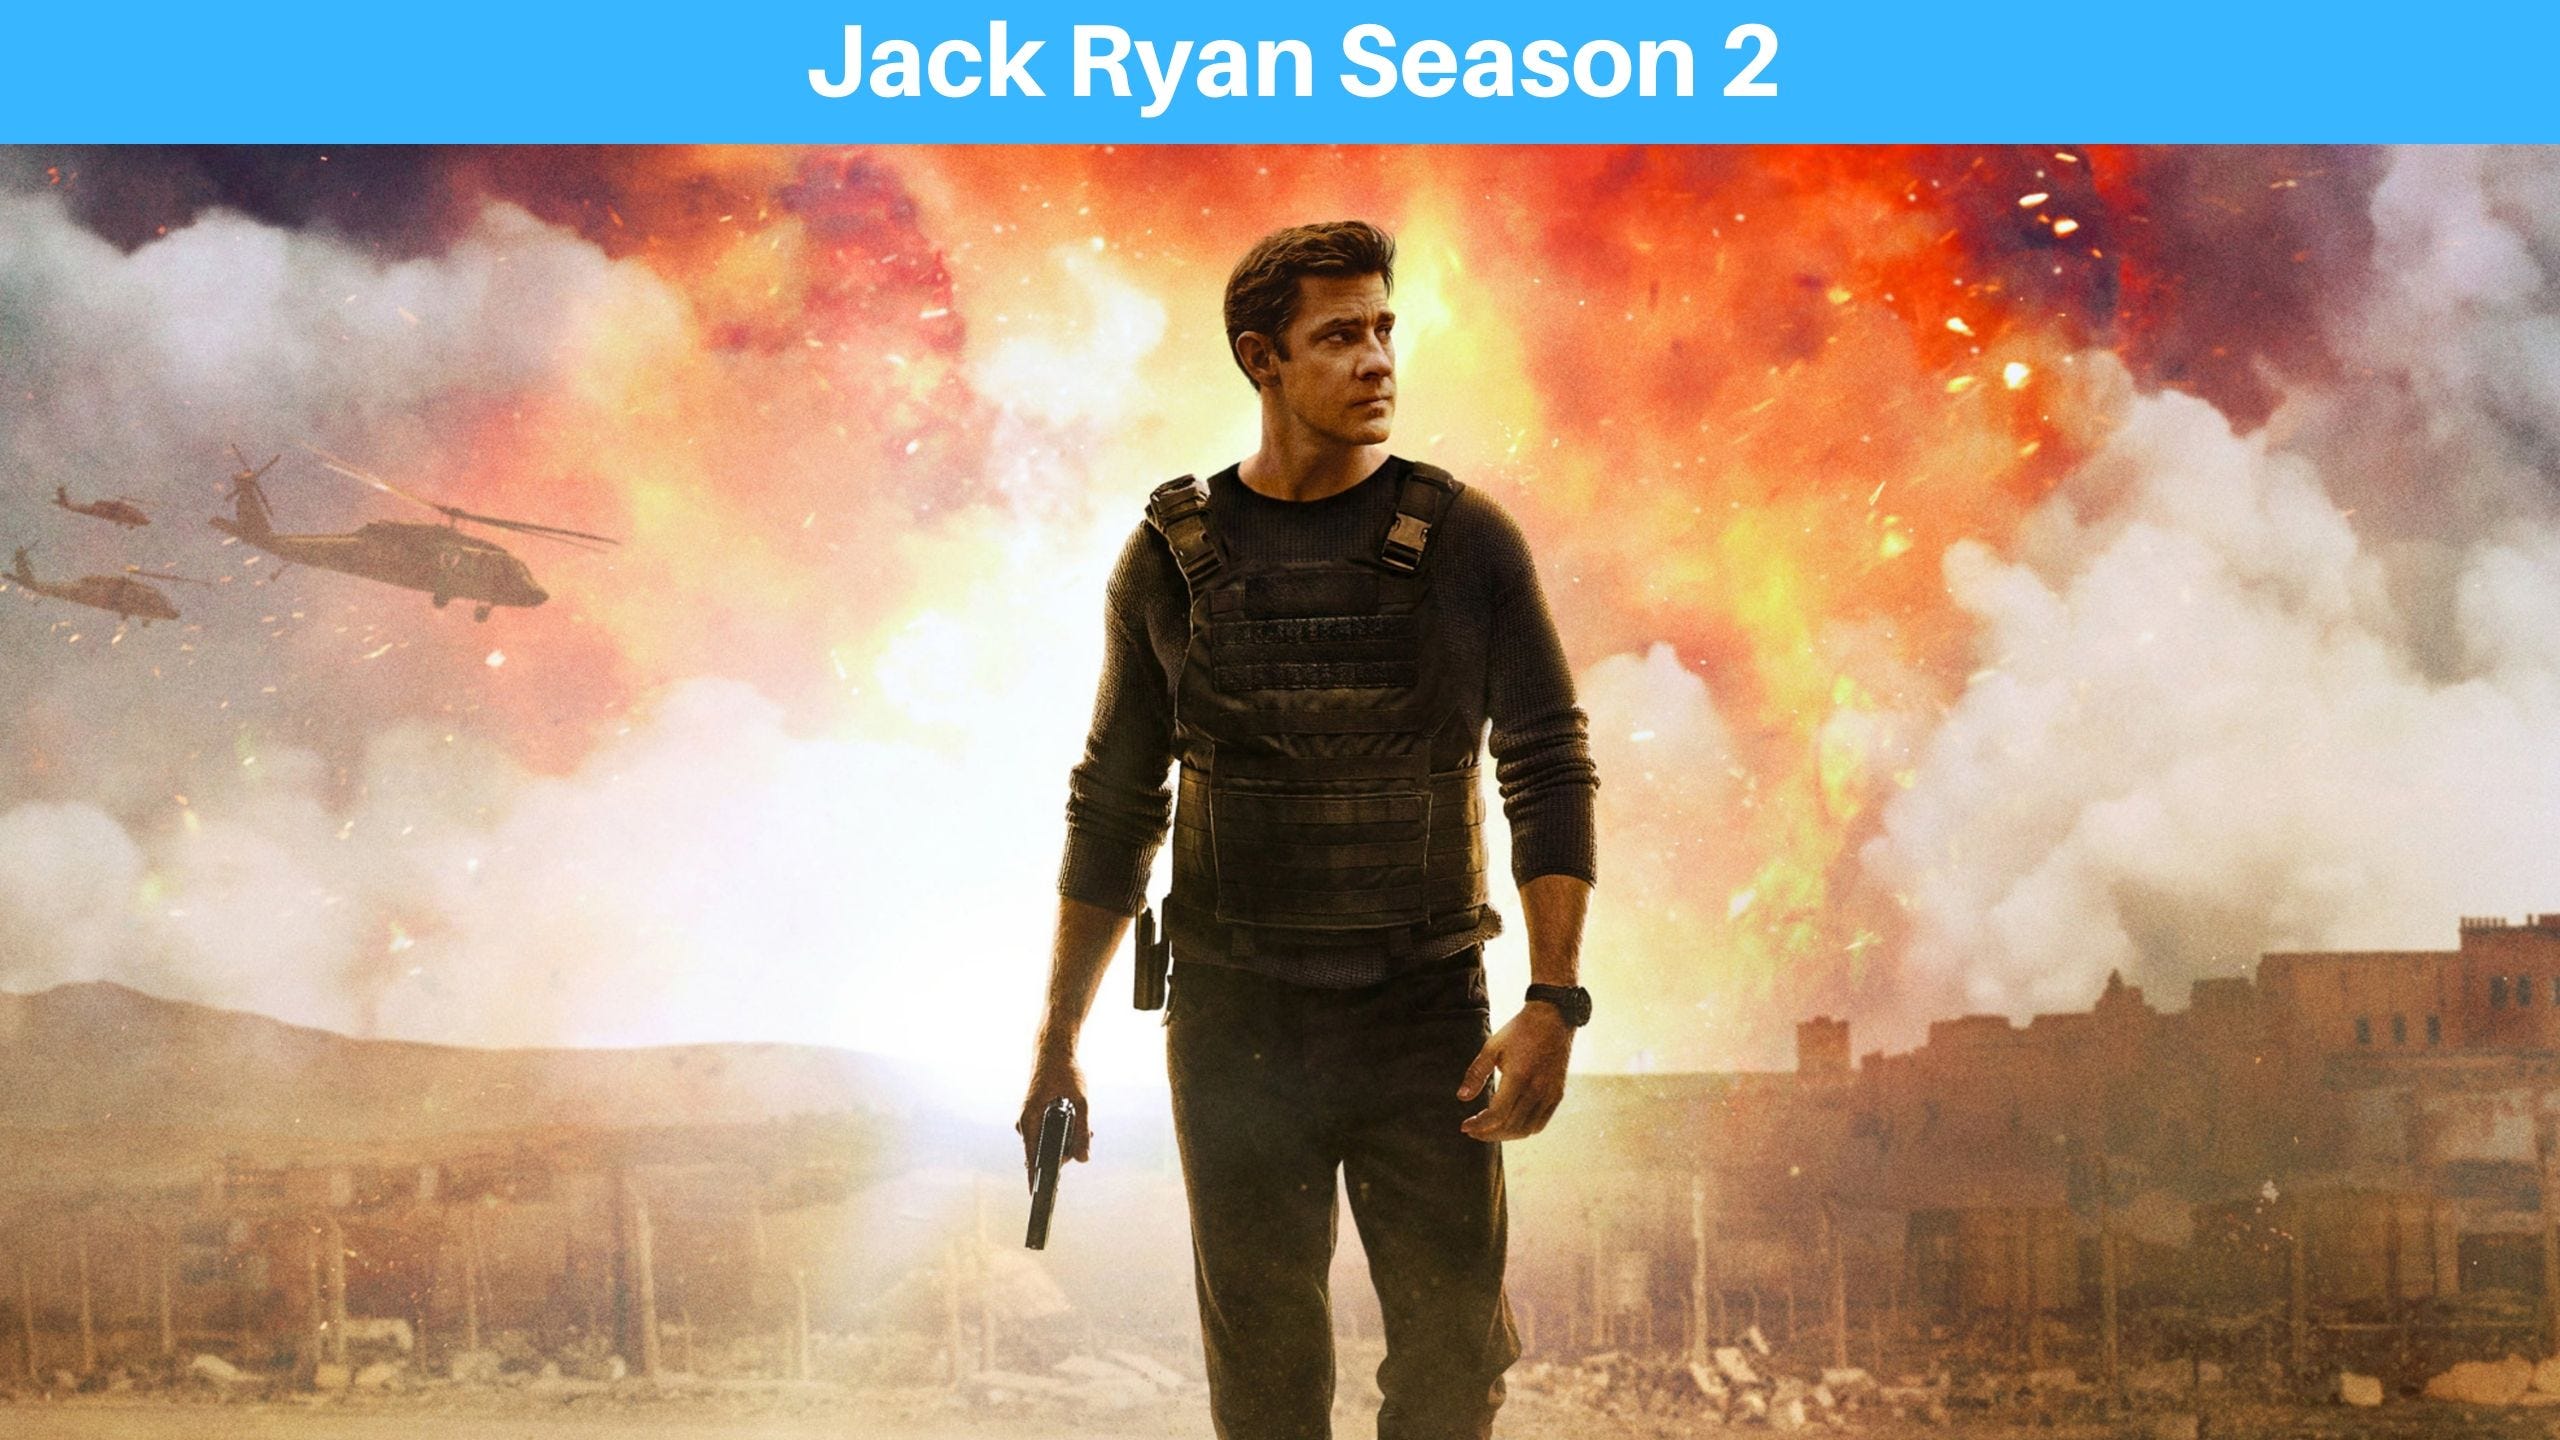 Jack Ryan Season 2 Episode 2 (amazon) Full Episodes